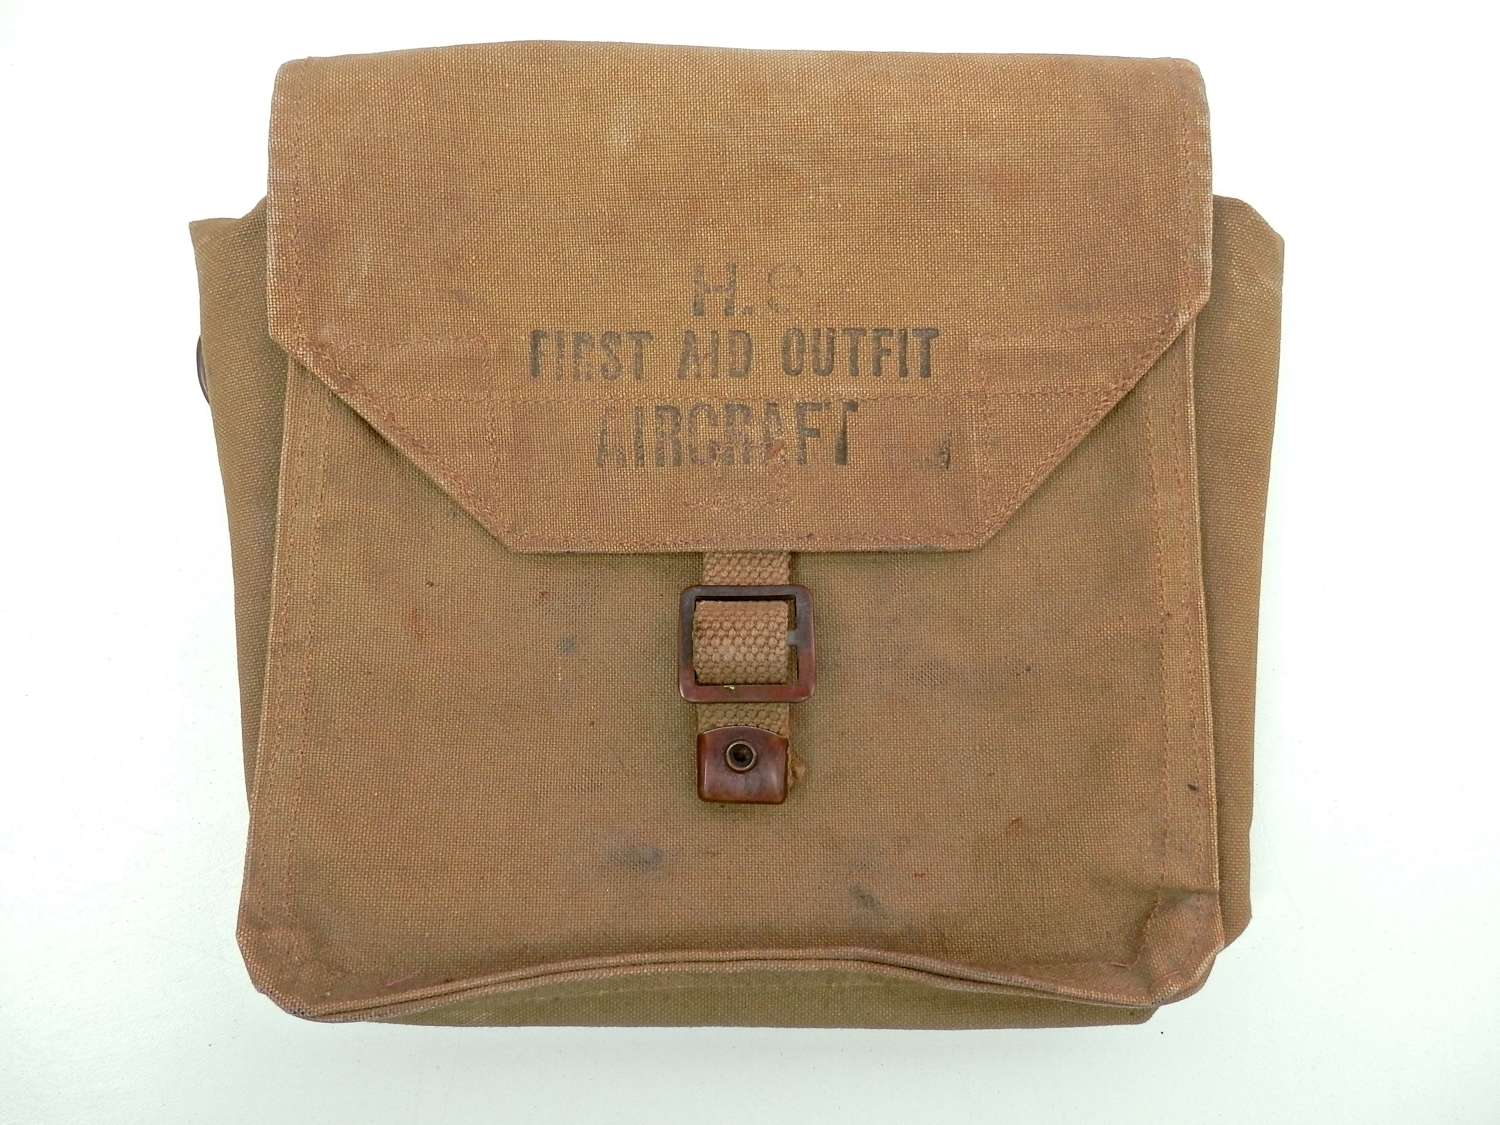 RAF first aid bag